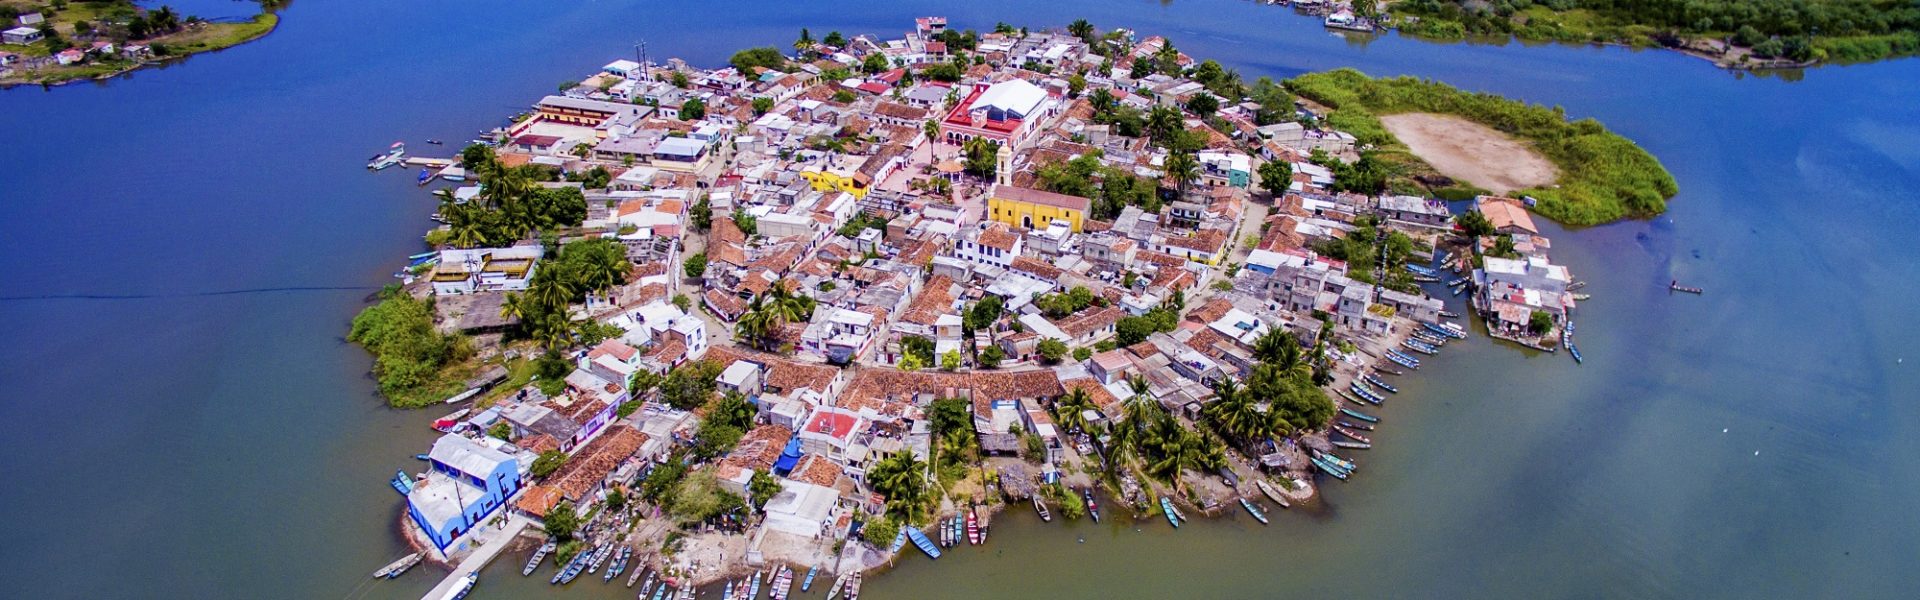 Riviera Nayarit, trésor caché de la côte pacifique mexicaine - Mexcaltitán